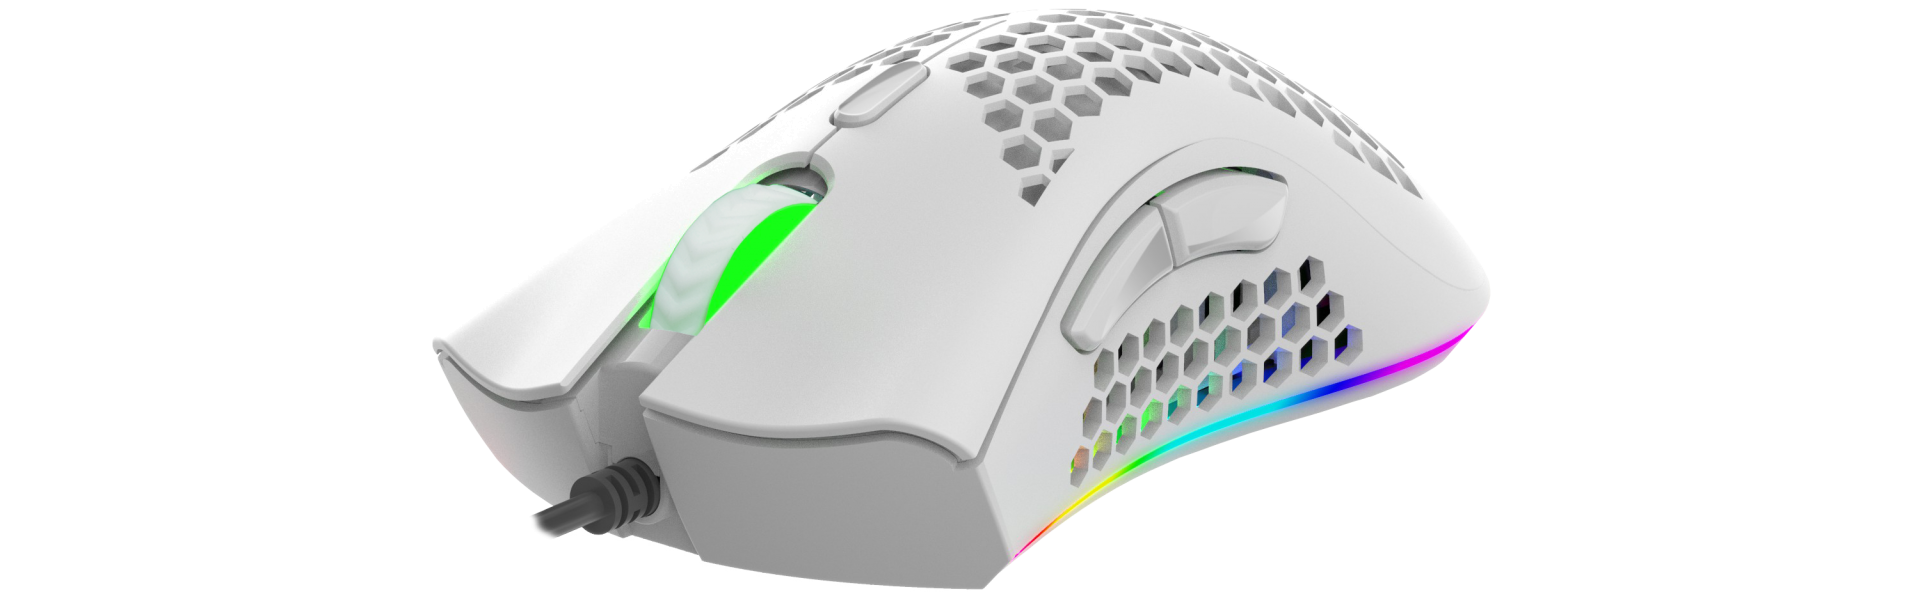 УЛЬТРАЛЕГКАЯ игровая программируемая мышь с LED-подсветкой RGB CHROMA LIGHT PANTEON MS772